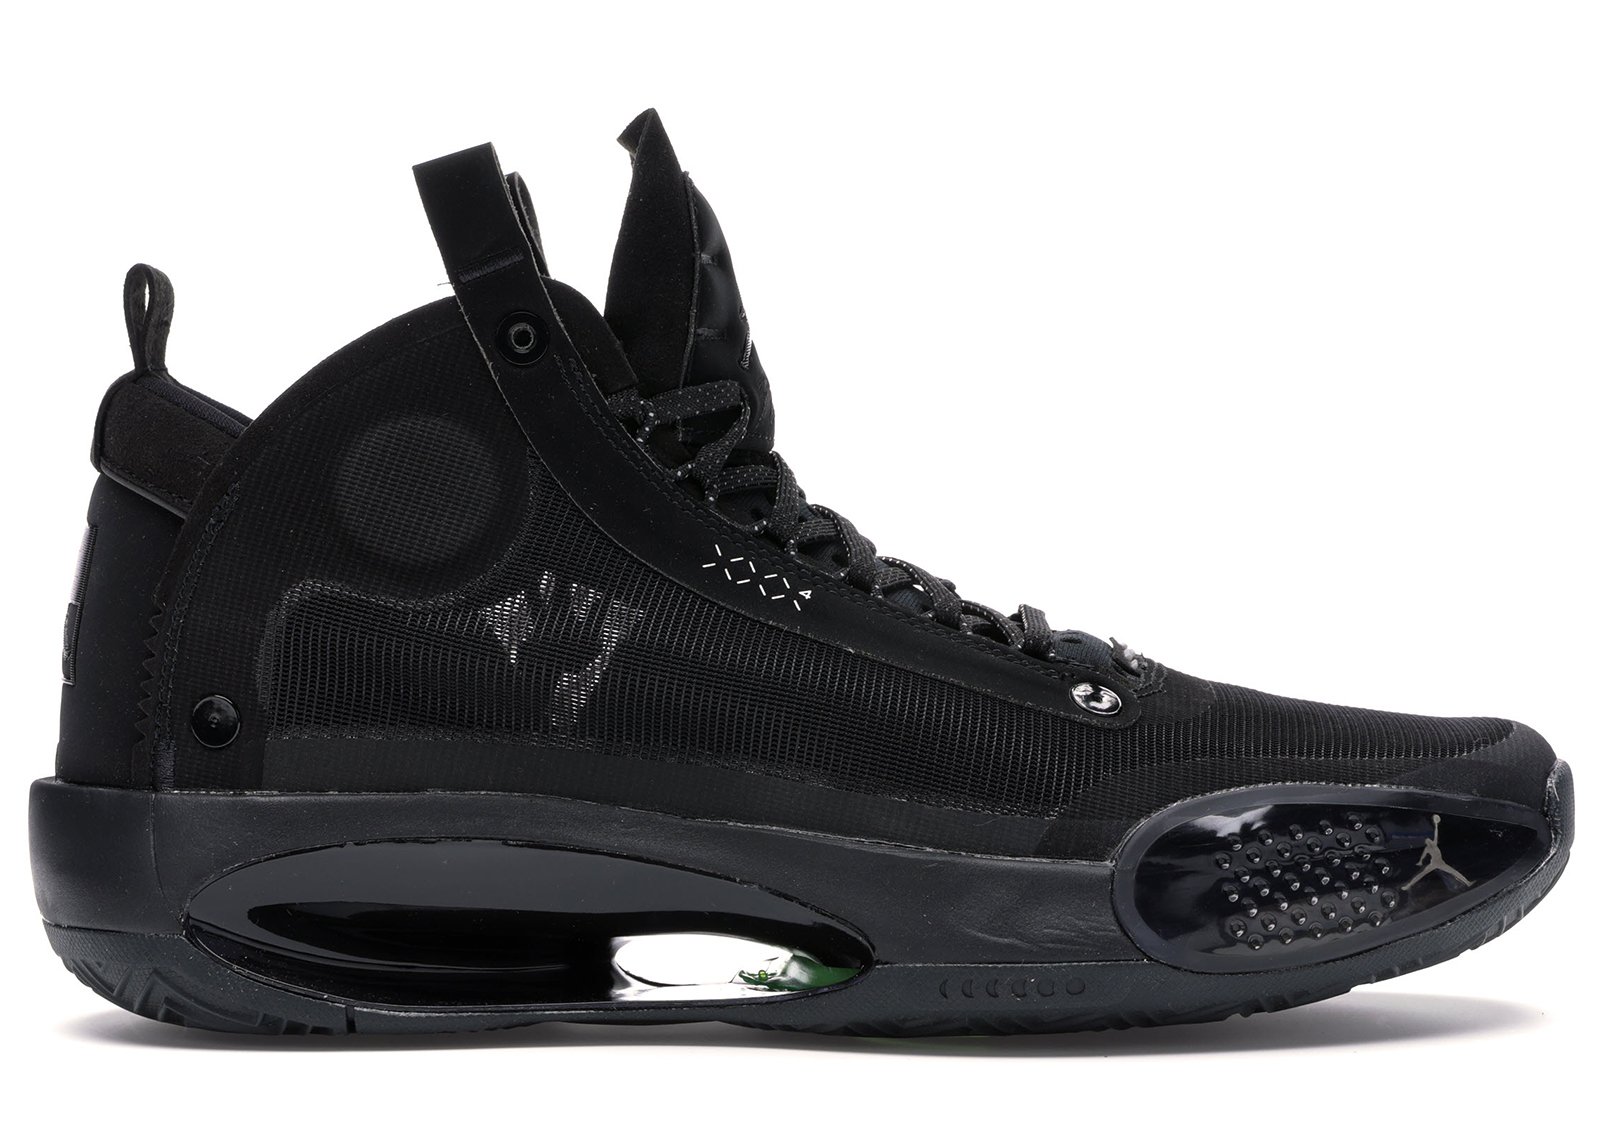 Jordan 34 Black Cat sneakers